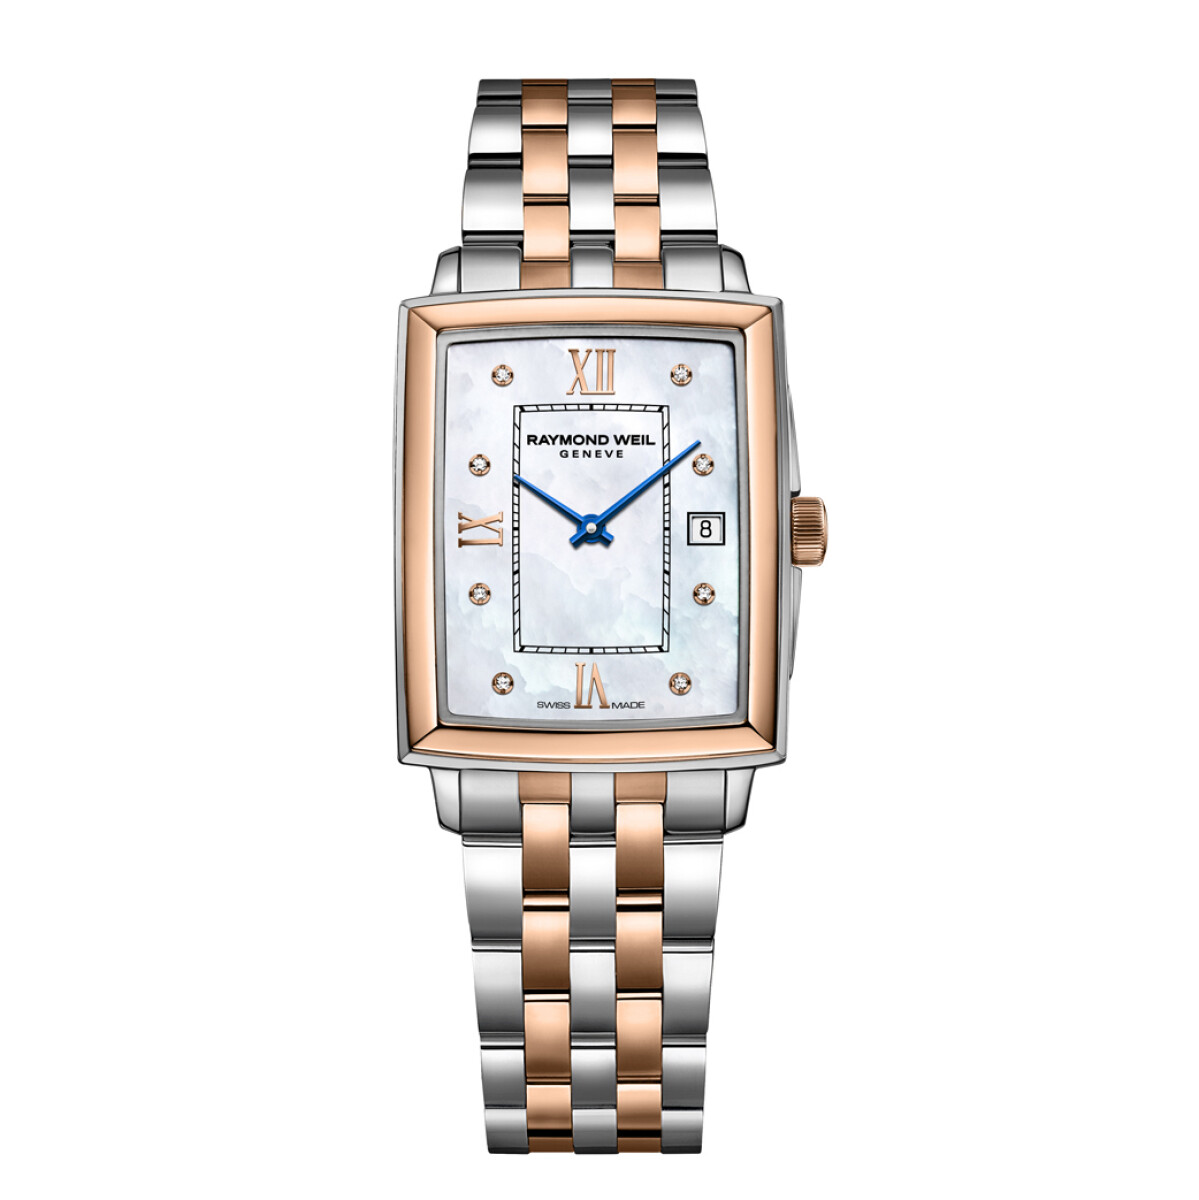 Reloj RAYMOND WEIL Toccata Ladies rectangular combinado acero y oro rosa - 8 brillantes 